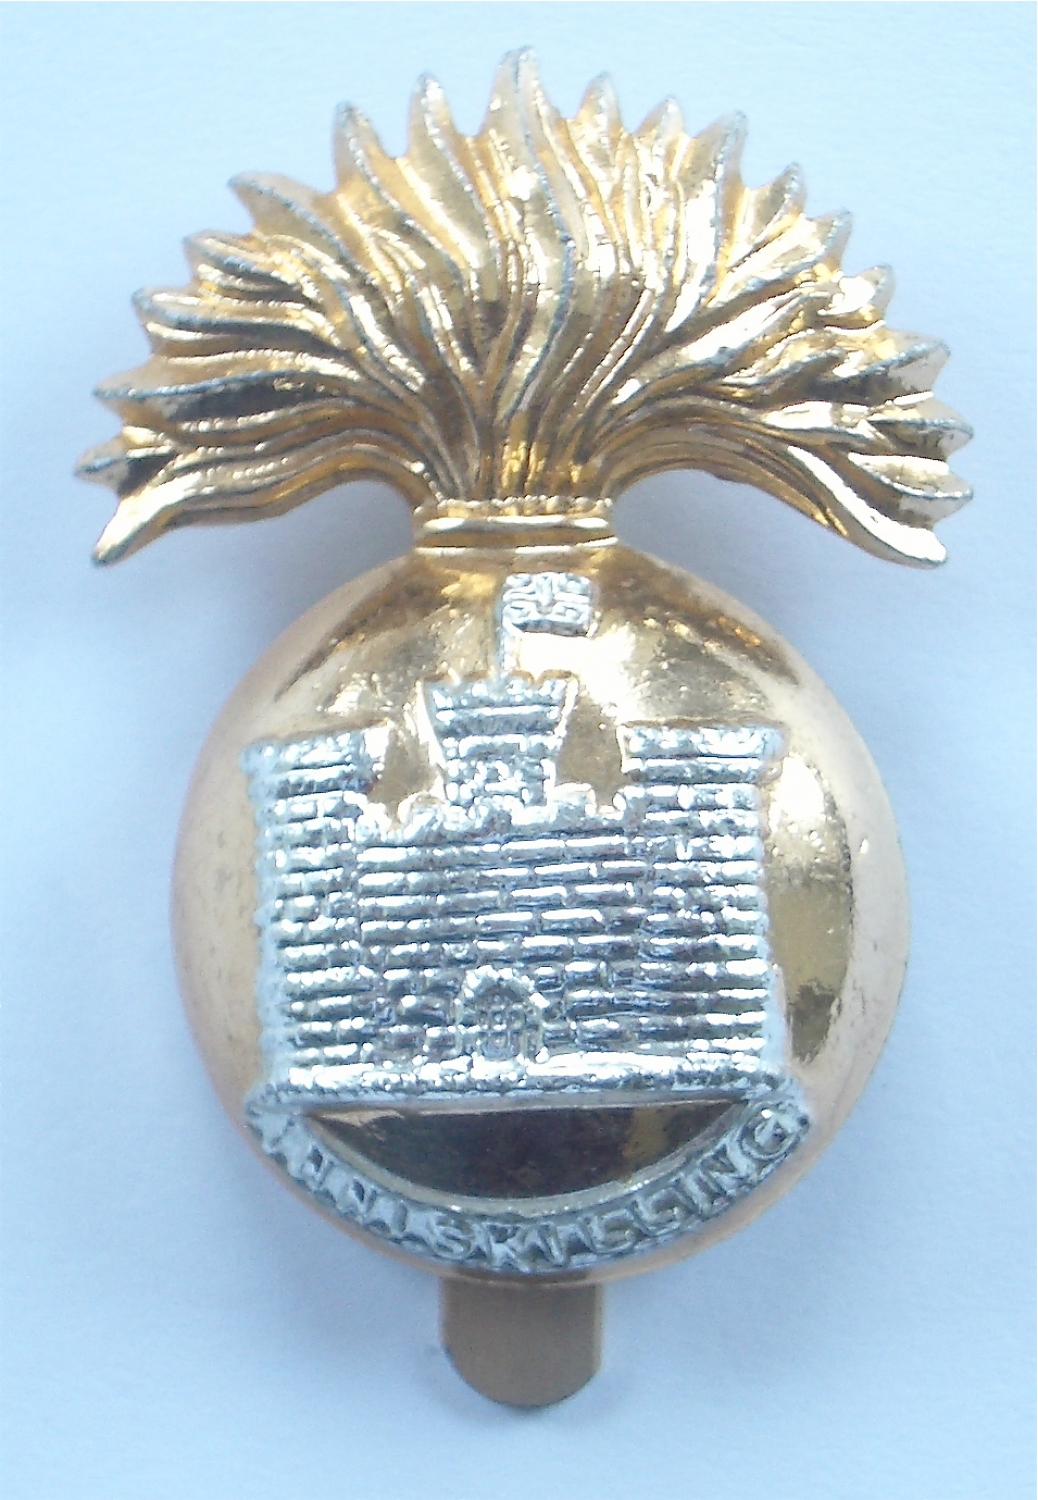 Inniskilling Fusiliers anodised cap badge